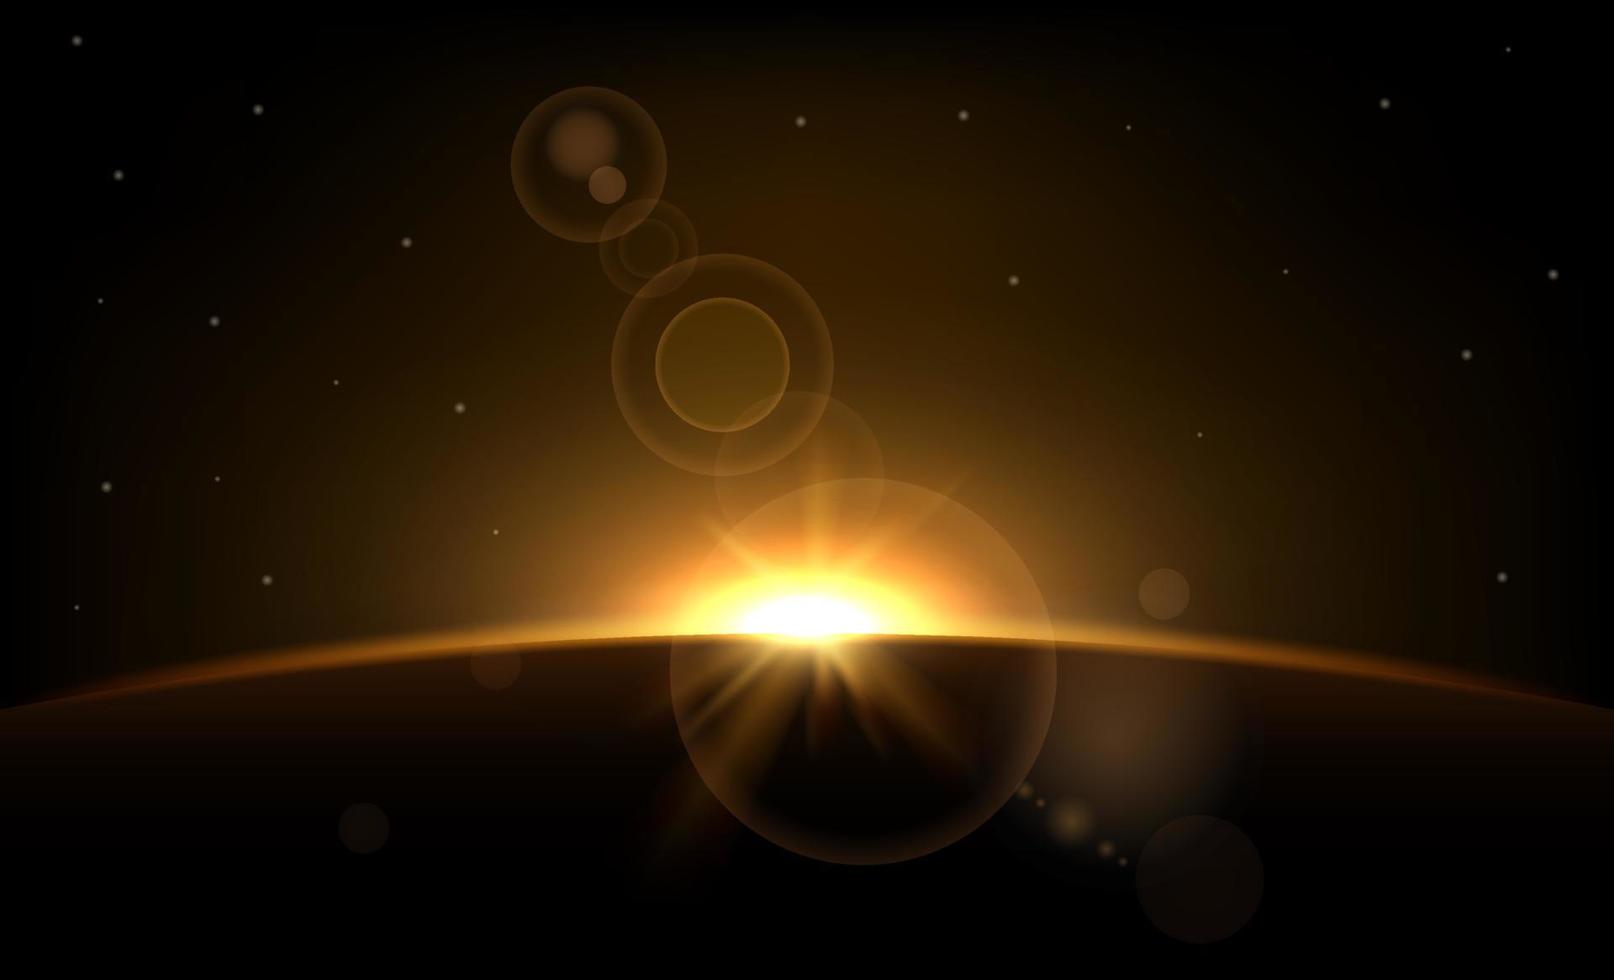 eclipse de sol anillo solar sobre fondo oscuro. planeta con rayos de sol. efecto de luz abstracto. resplandor dorado en el espacio. horizonte de la tierra con luces. amanecer realista con miradas. ilustración vectorial vector